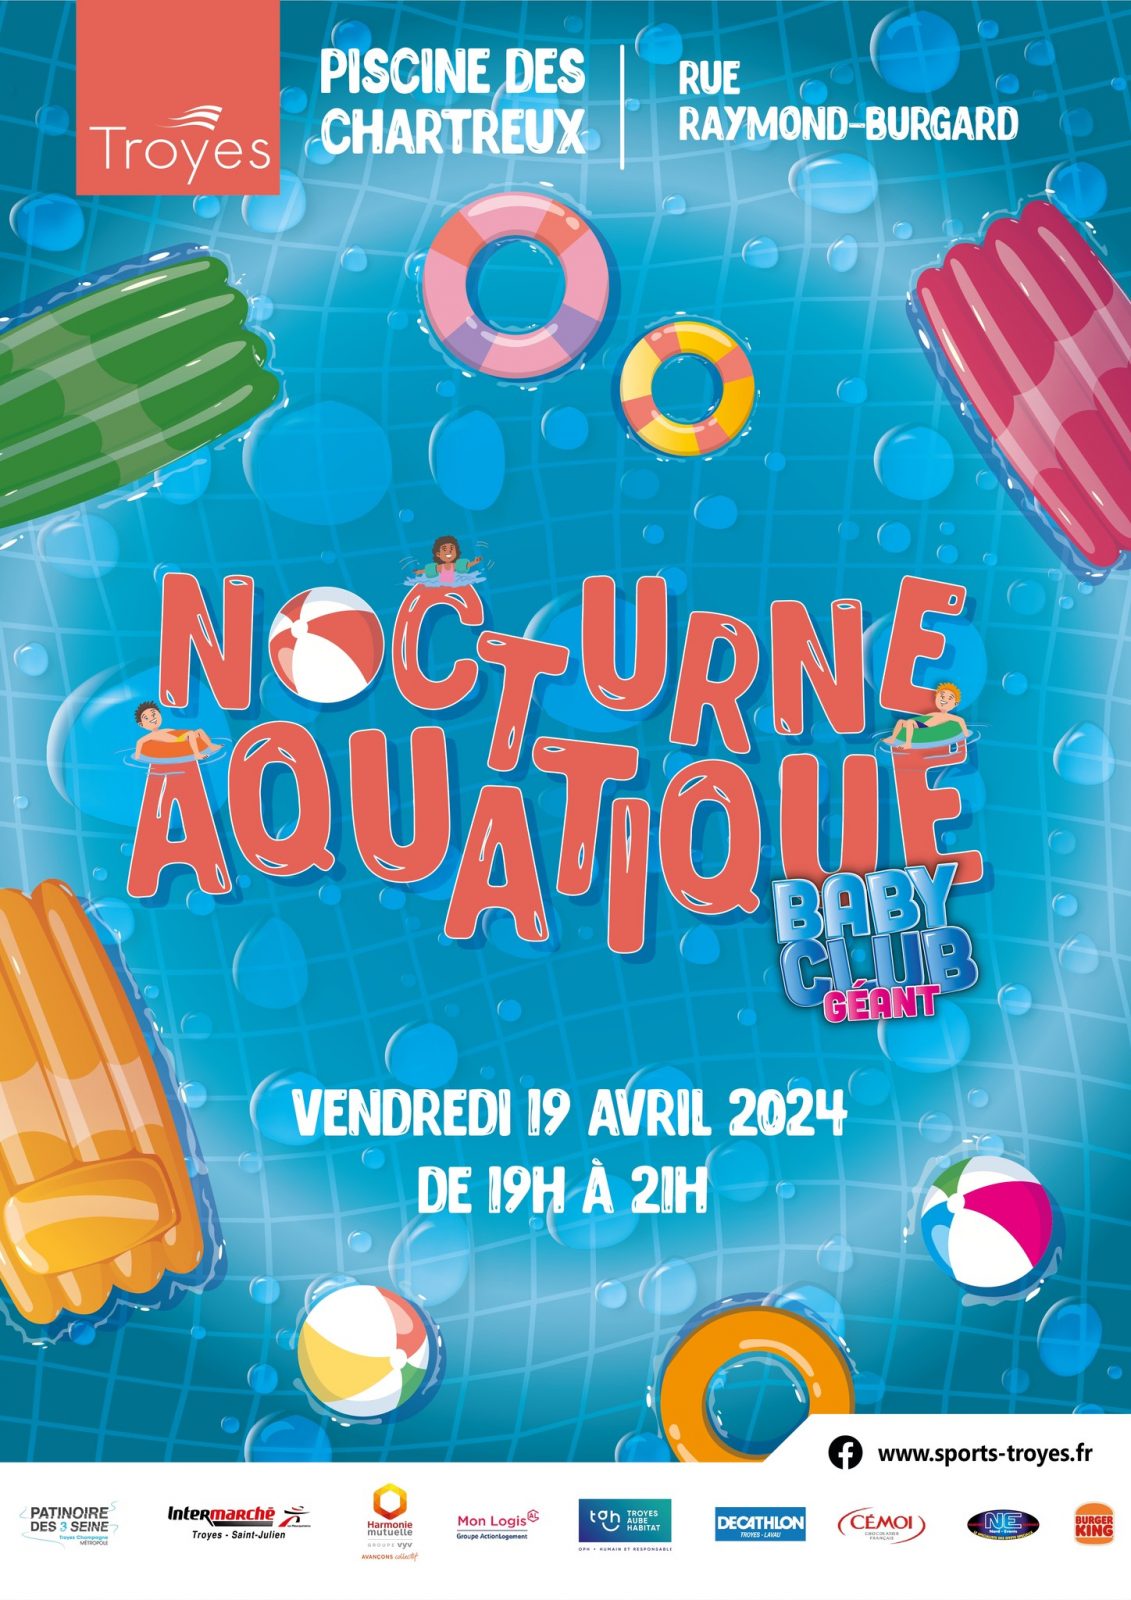 NOCTURNE AQUATIQUE - BABY CLUB GÉANT Le 19 avr 2024